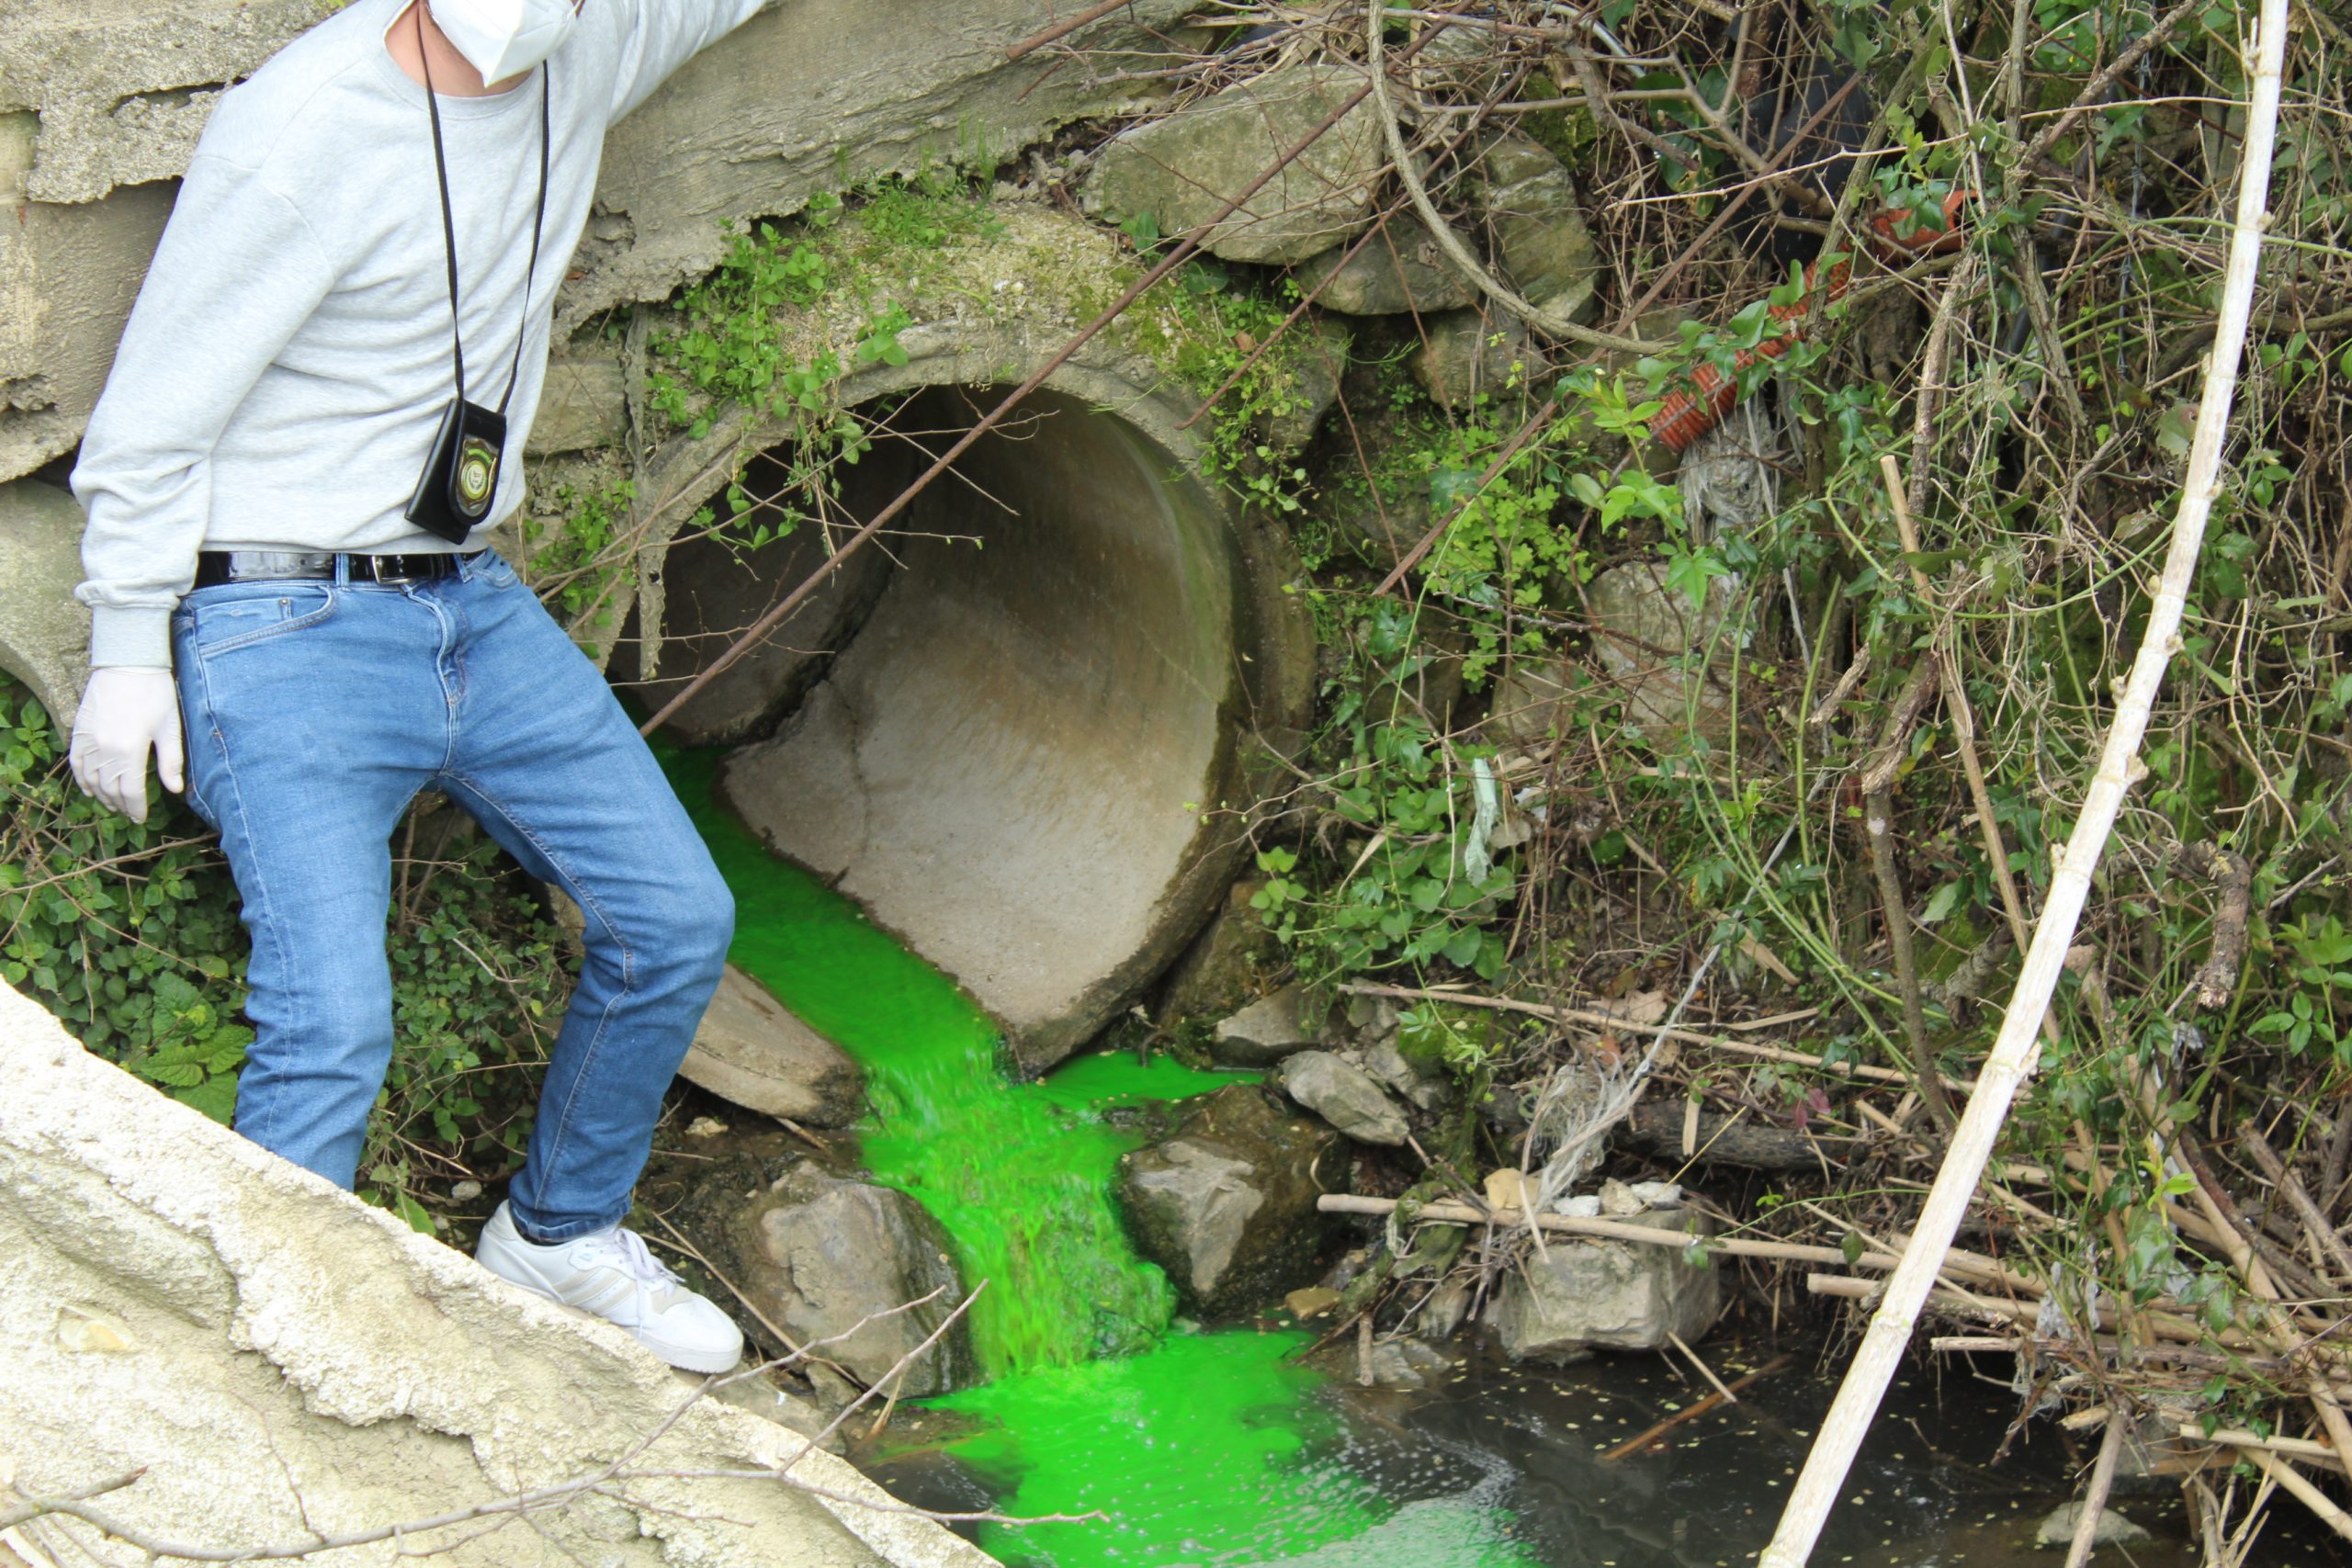 Smaltimento illecito rifiuti: denunce in provincia di Salerno